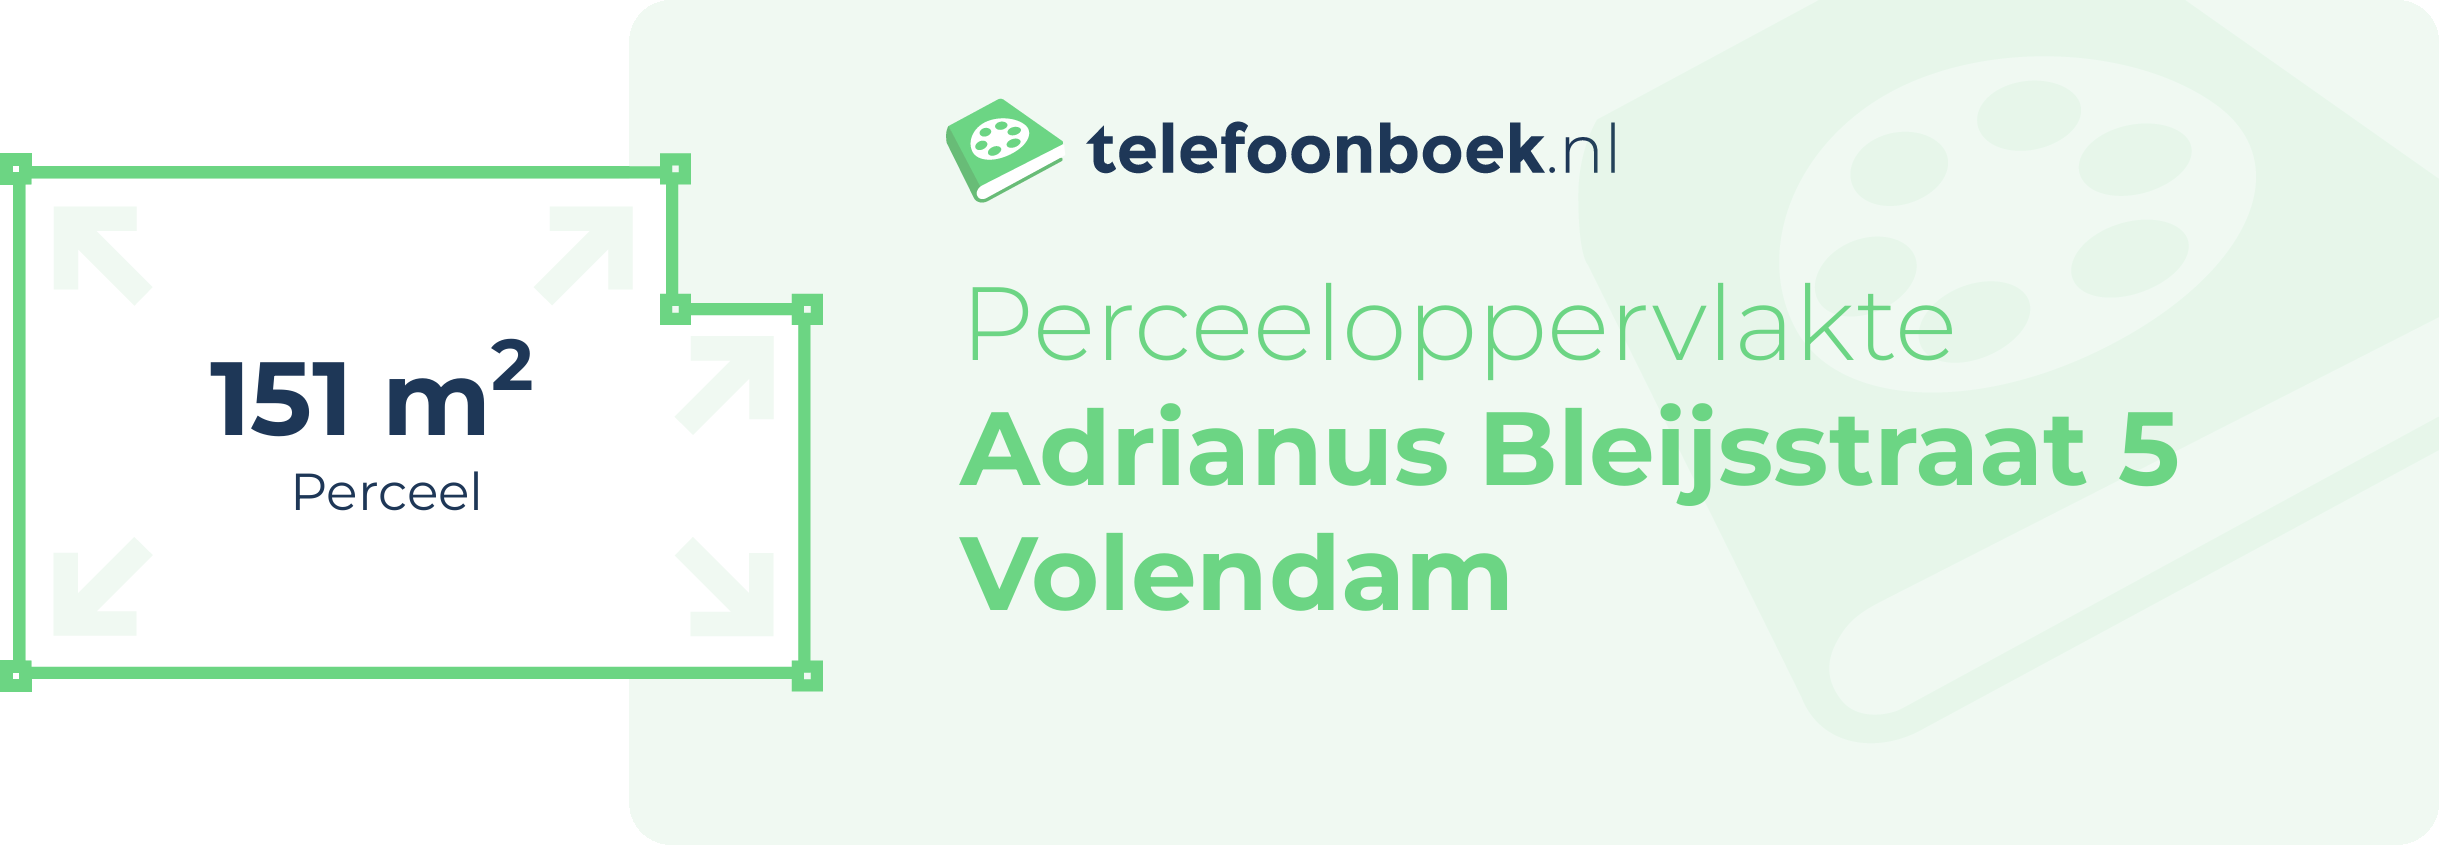 Perceeloppervlakte Adrianus Bleijsstraat 5 Volendam